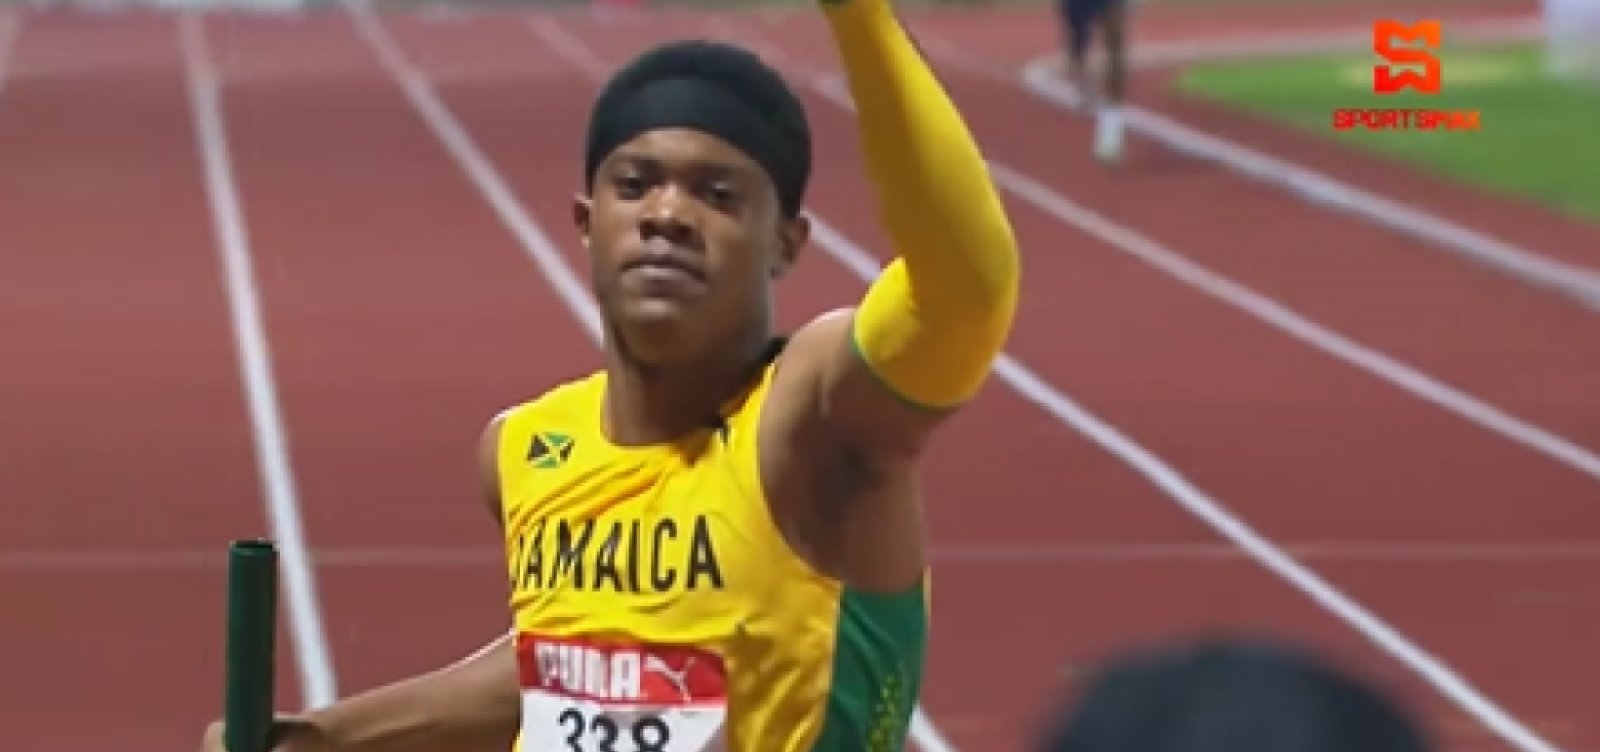 Atleta jamaicano de 16 anos quebra recorde de Usain Bolt alcançado em 2002